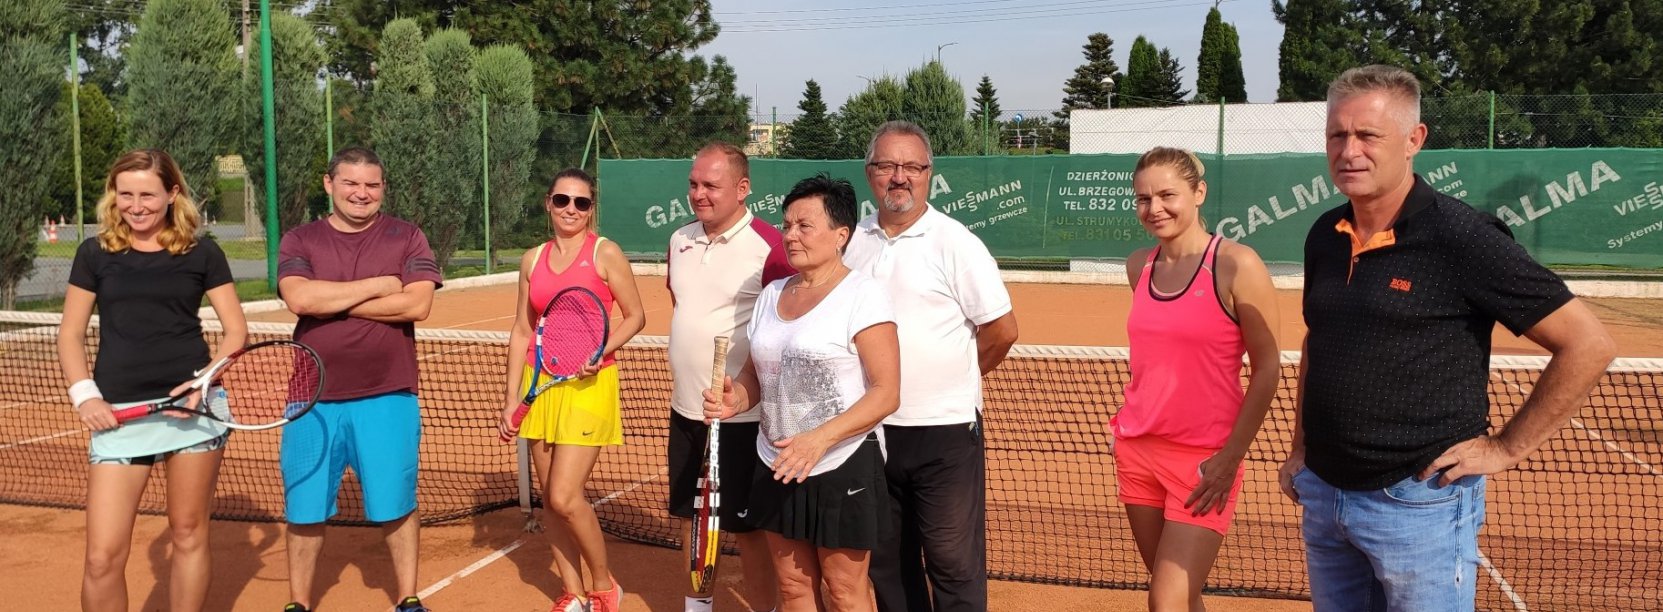 Ośmioro zawodników stojących na korcie tenisowym 